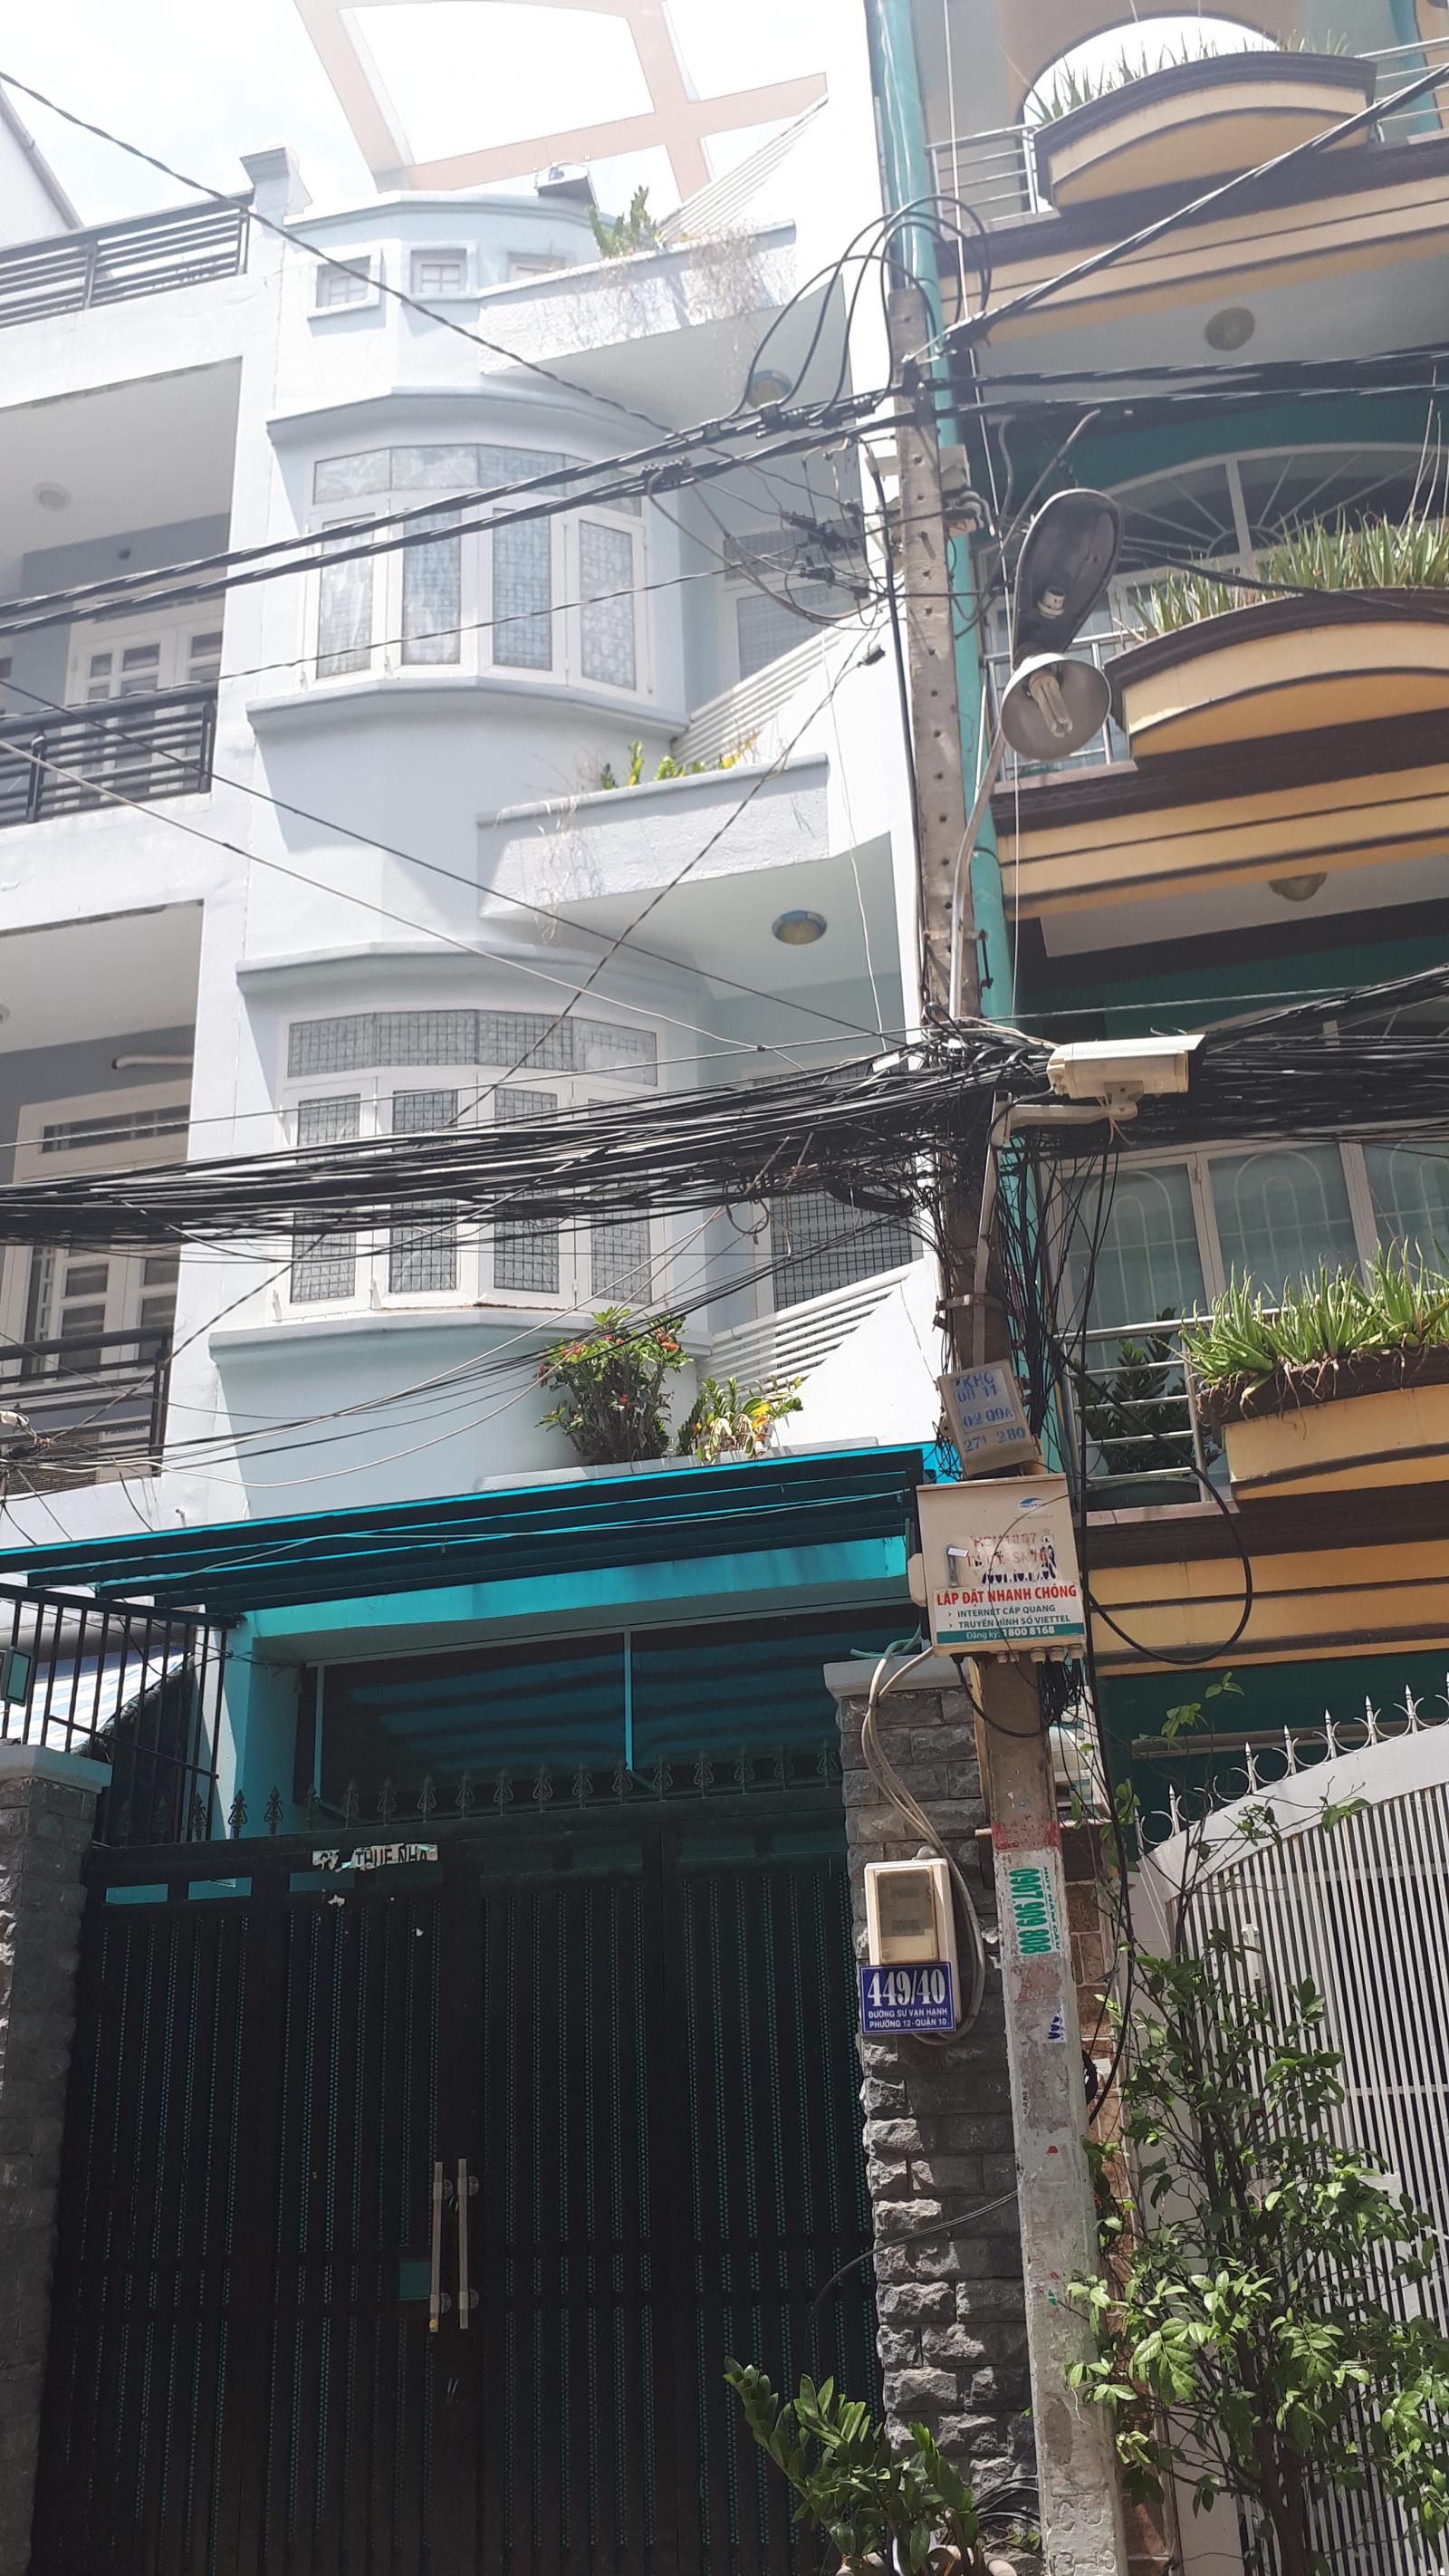  Bán nhà mặt tiền đường Trần Hưng Đạo - Triệu Quang Phục, P10, Quận 5 (4.05 x 17m) 3 lầu